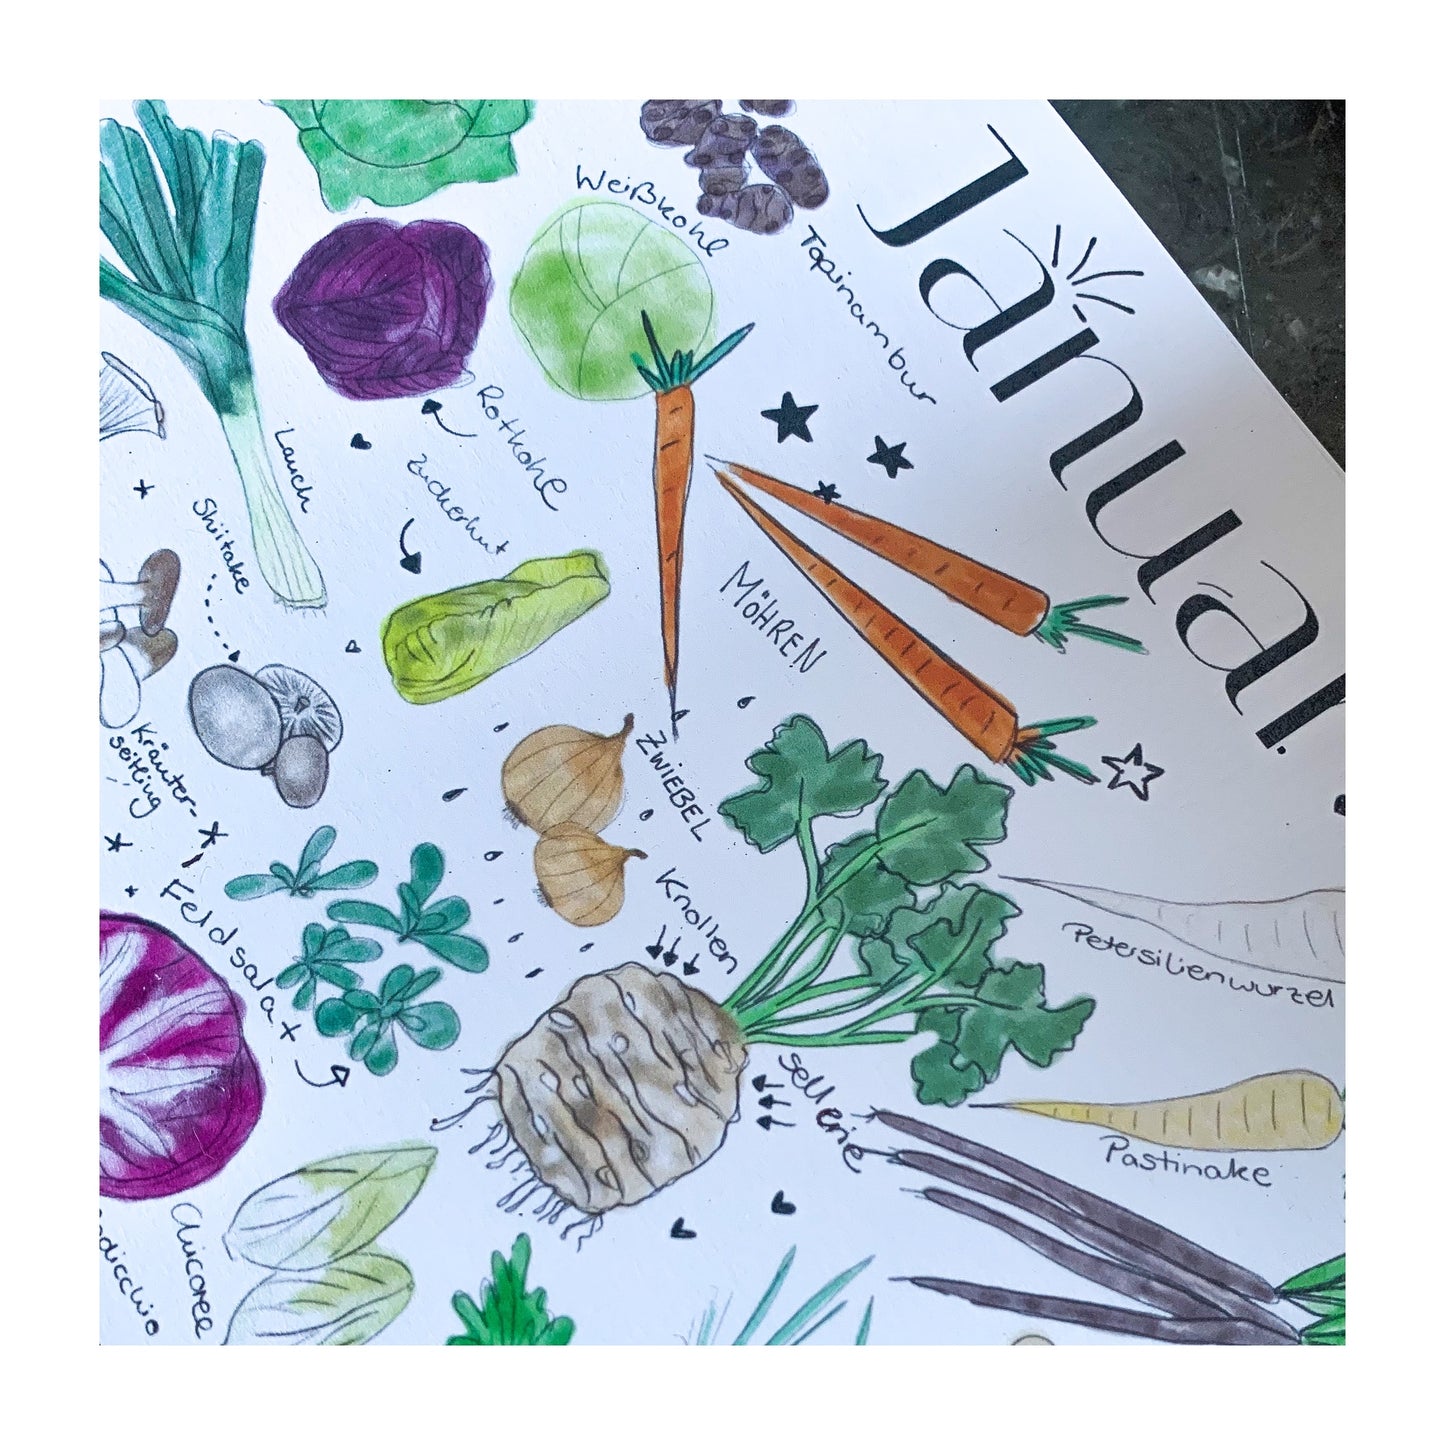 Der Kleine "Foody", Ewiger Saisonkalender, Heimisches Obst und Gemüse, Handgezeichnet, Postkarten-Größe, Aquarell, Artprint, Geschenk